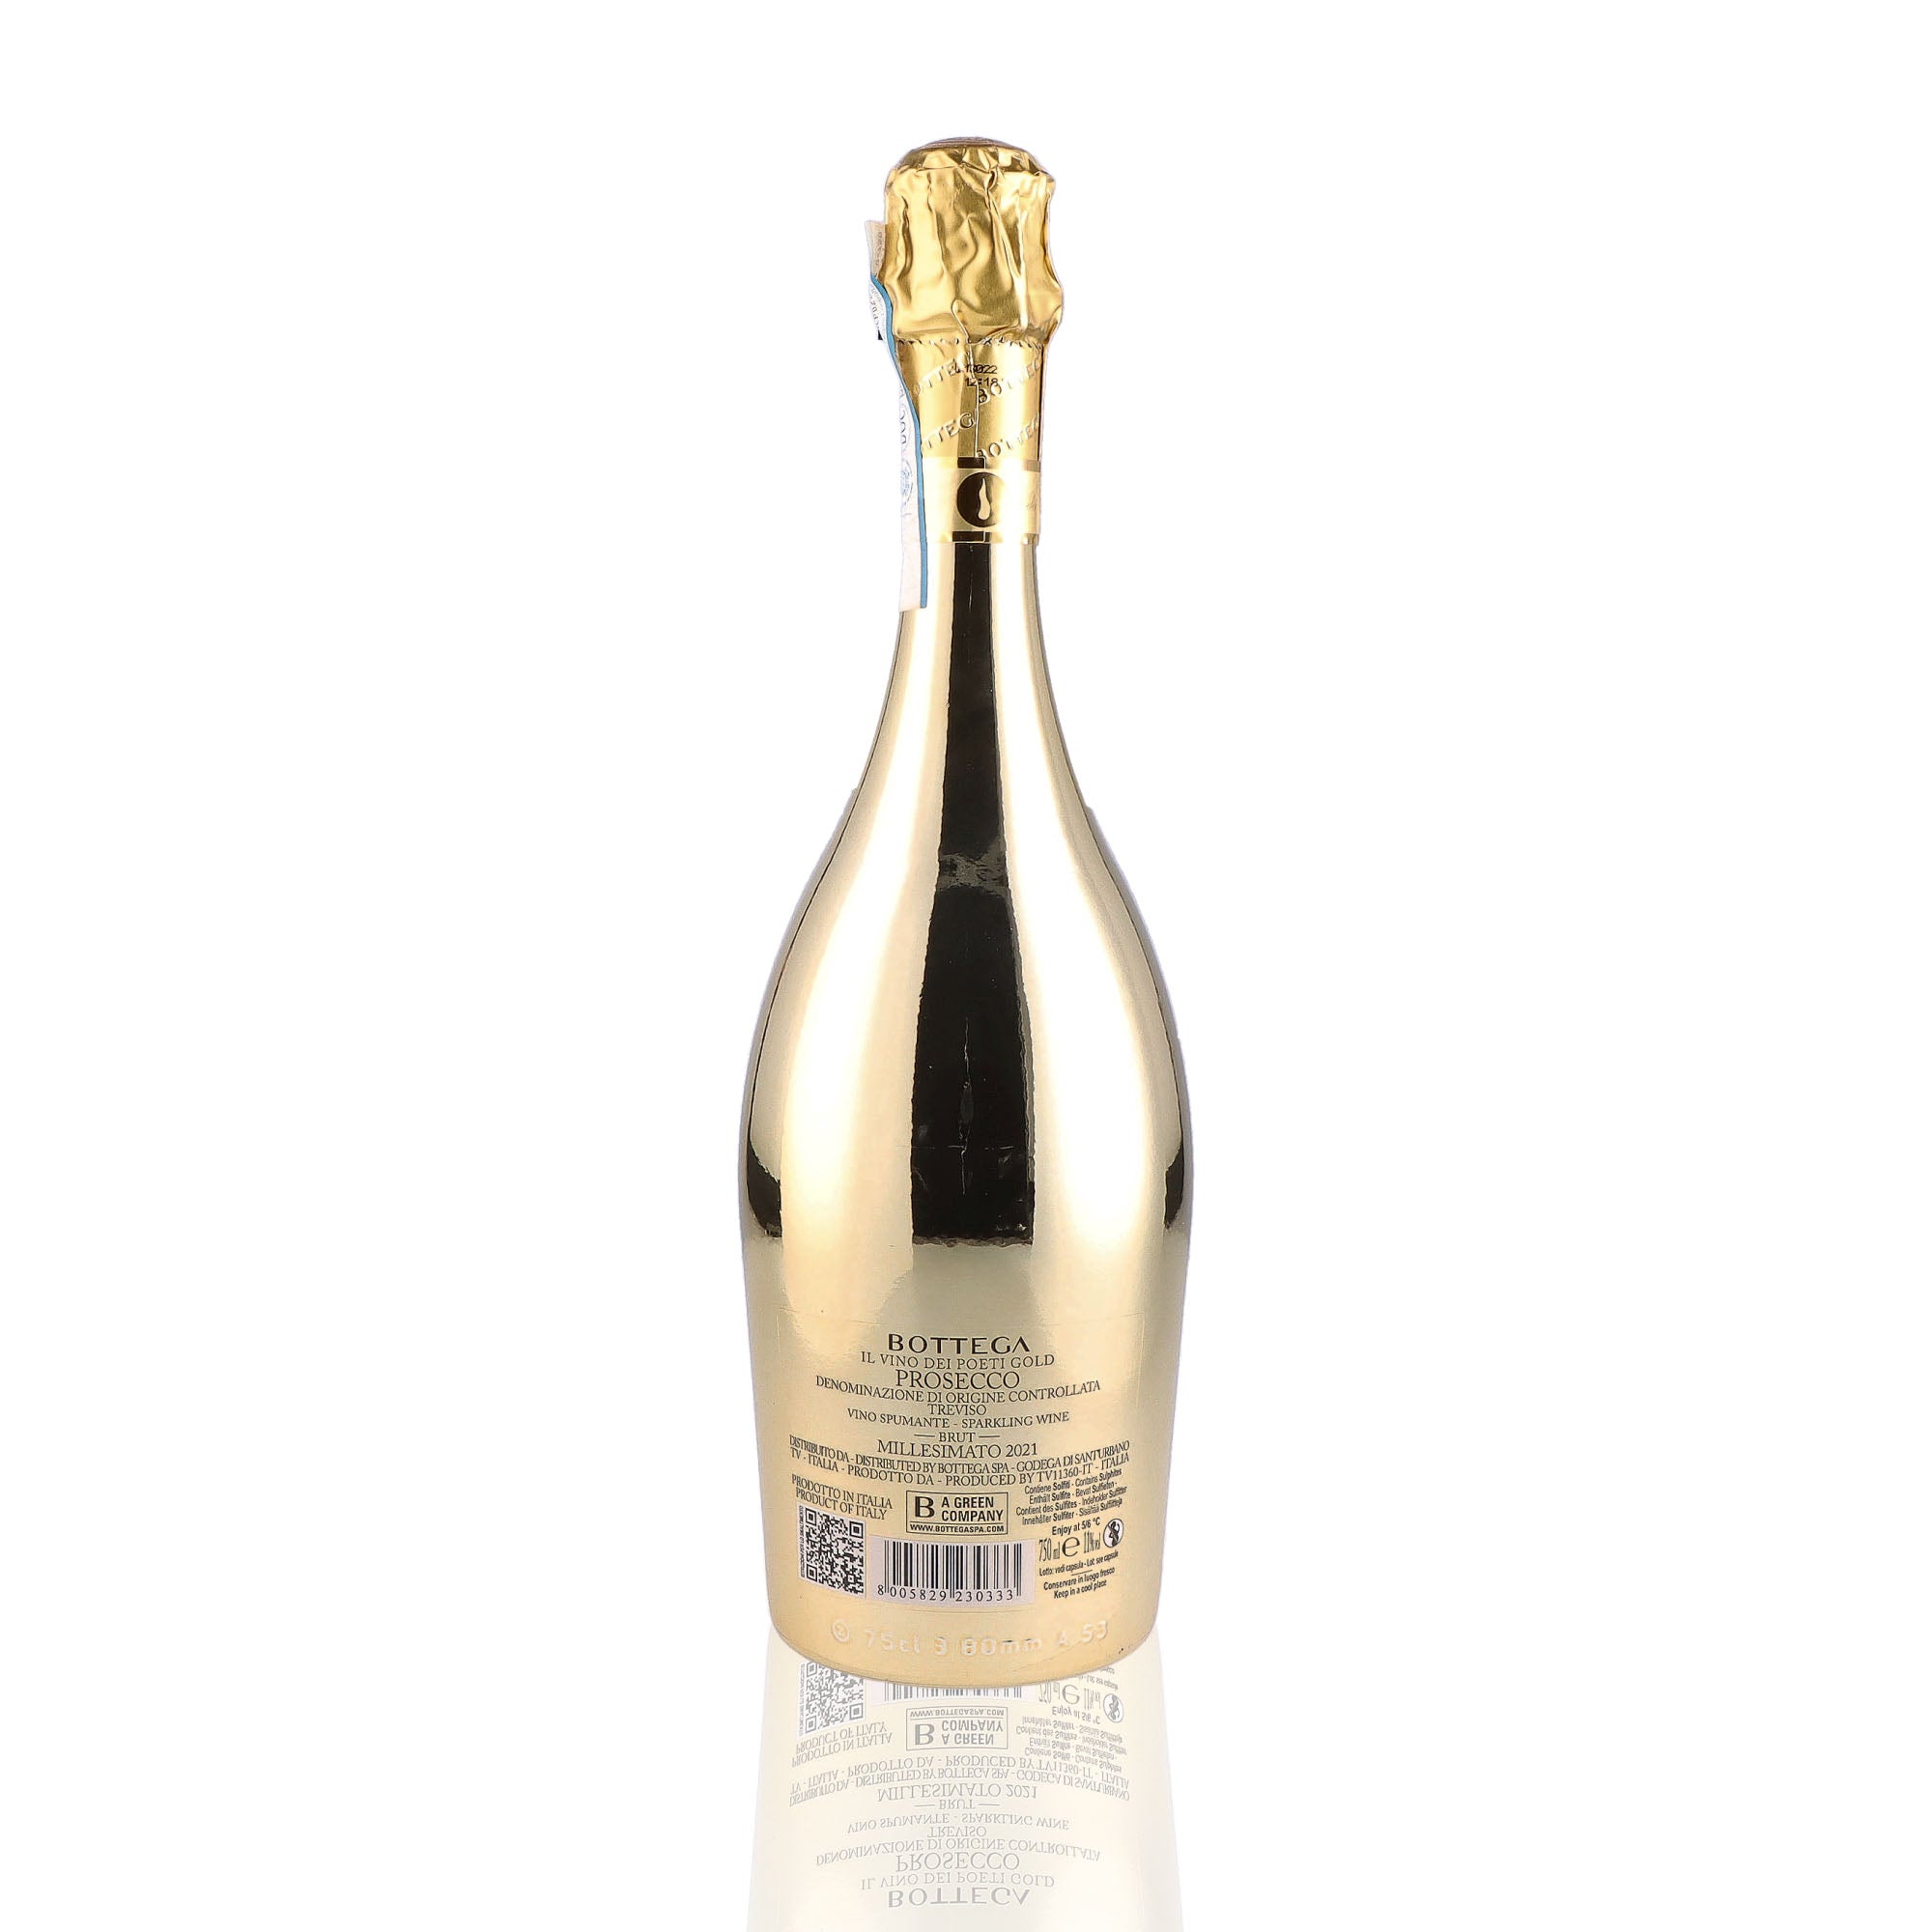 Une bouteille de prosecco de la marque Bottega, de type brut, nommée gold.